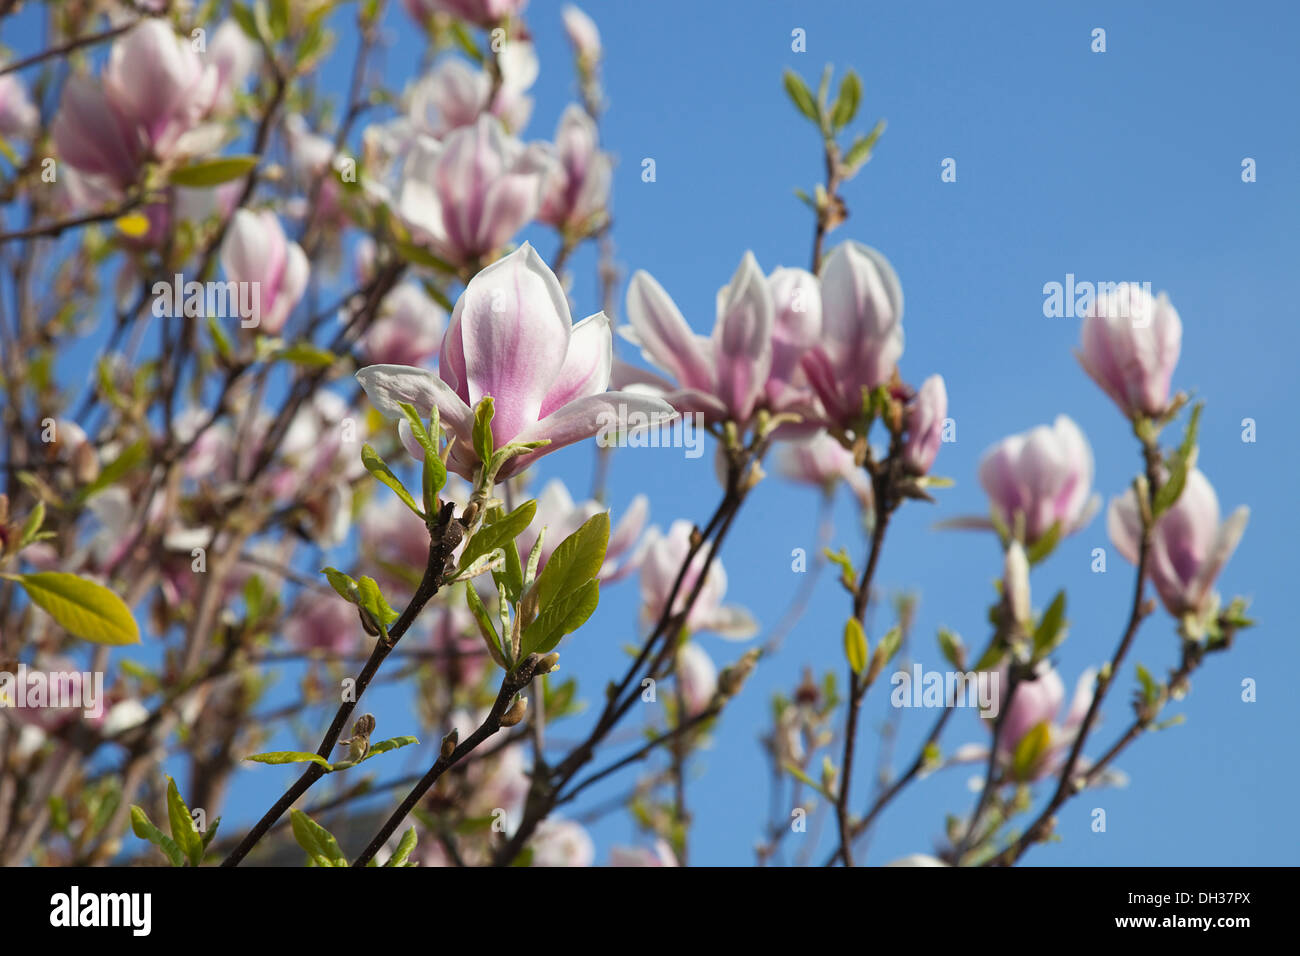 Magnolia soulangeana. Close up tulip simile a fiori bianco lavato rosa alla base contro il cielo blu. Foto Stock